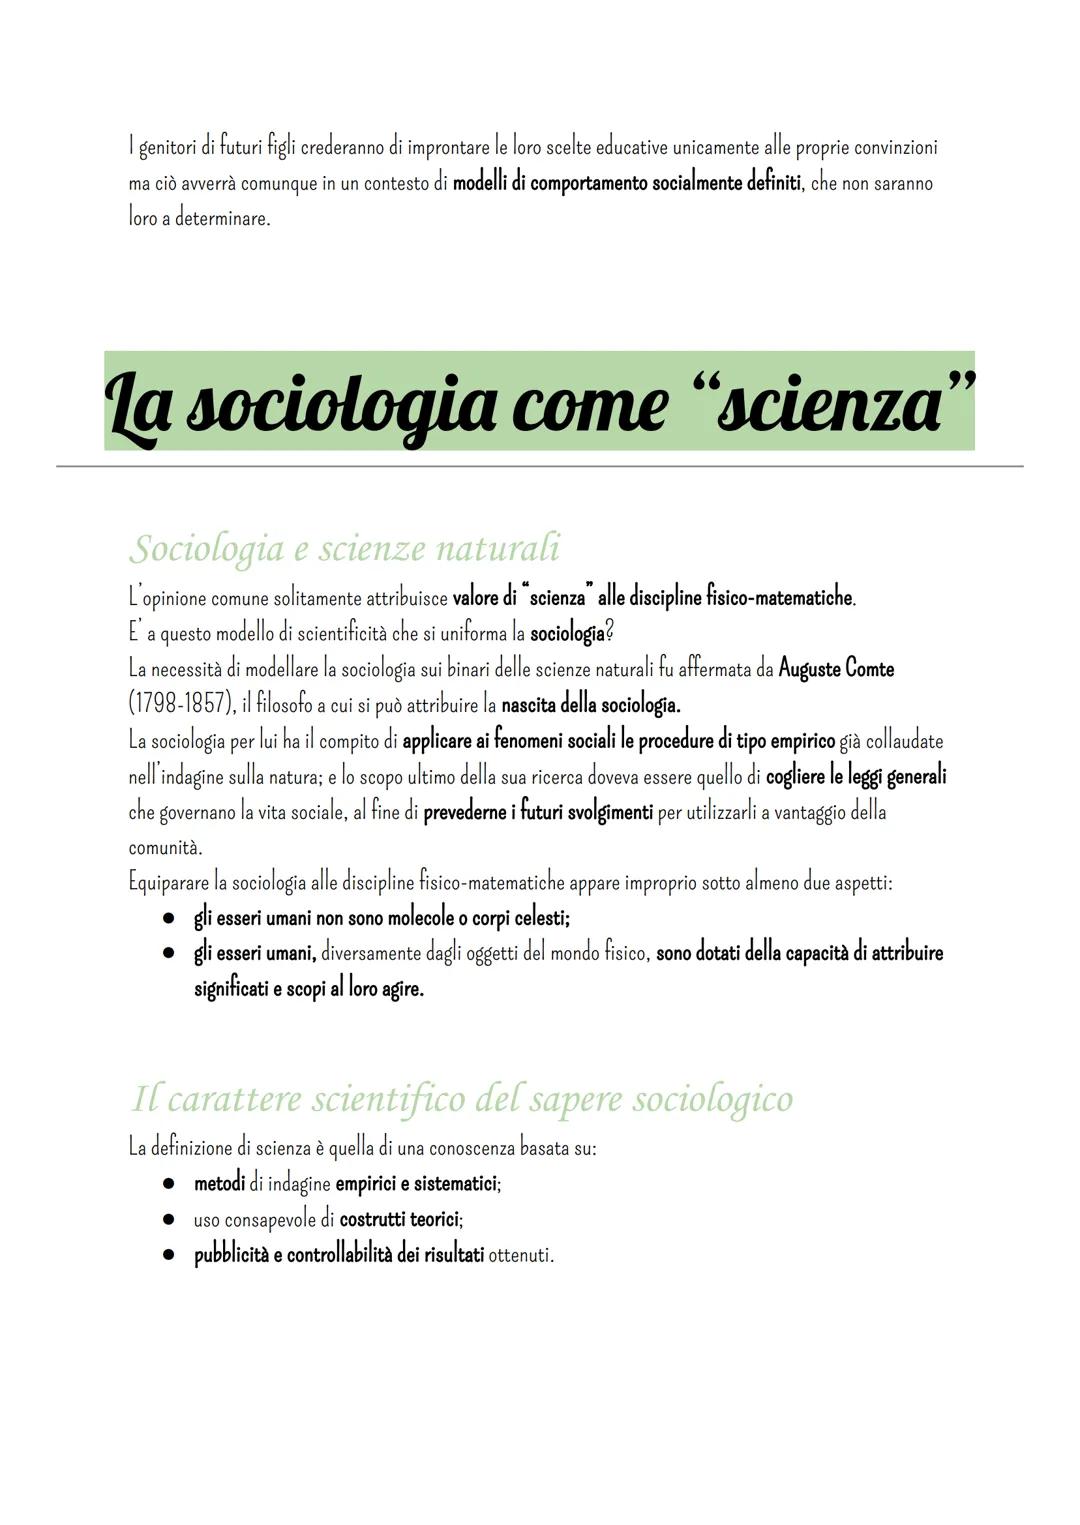 Sociologia
Che cos'è la sociologia?
La definizione di sociologia
L'etimologia della parola può aiutarci a dare una definizione di sociologia